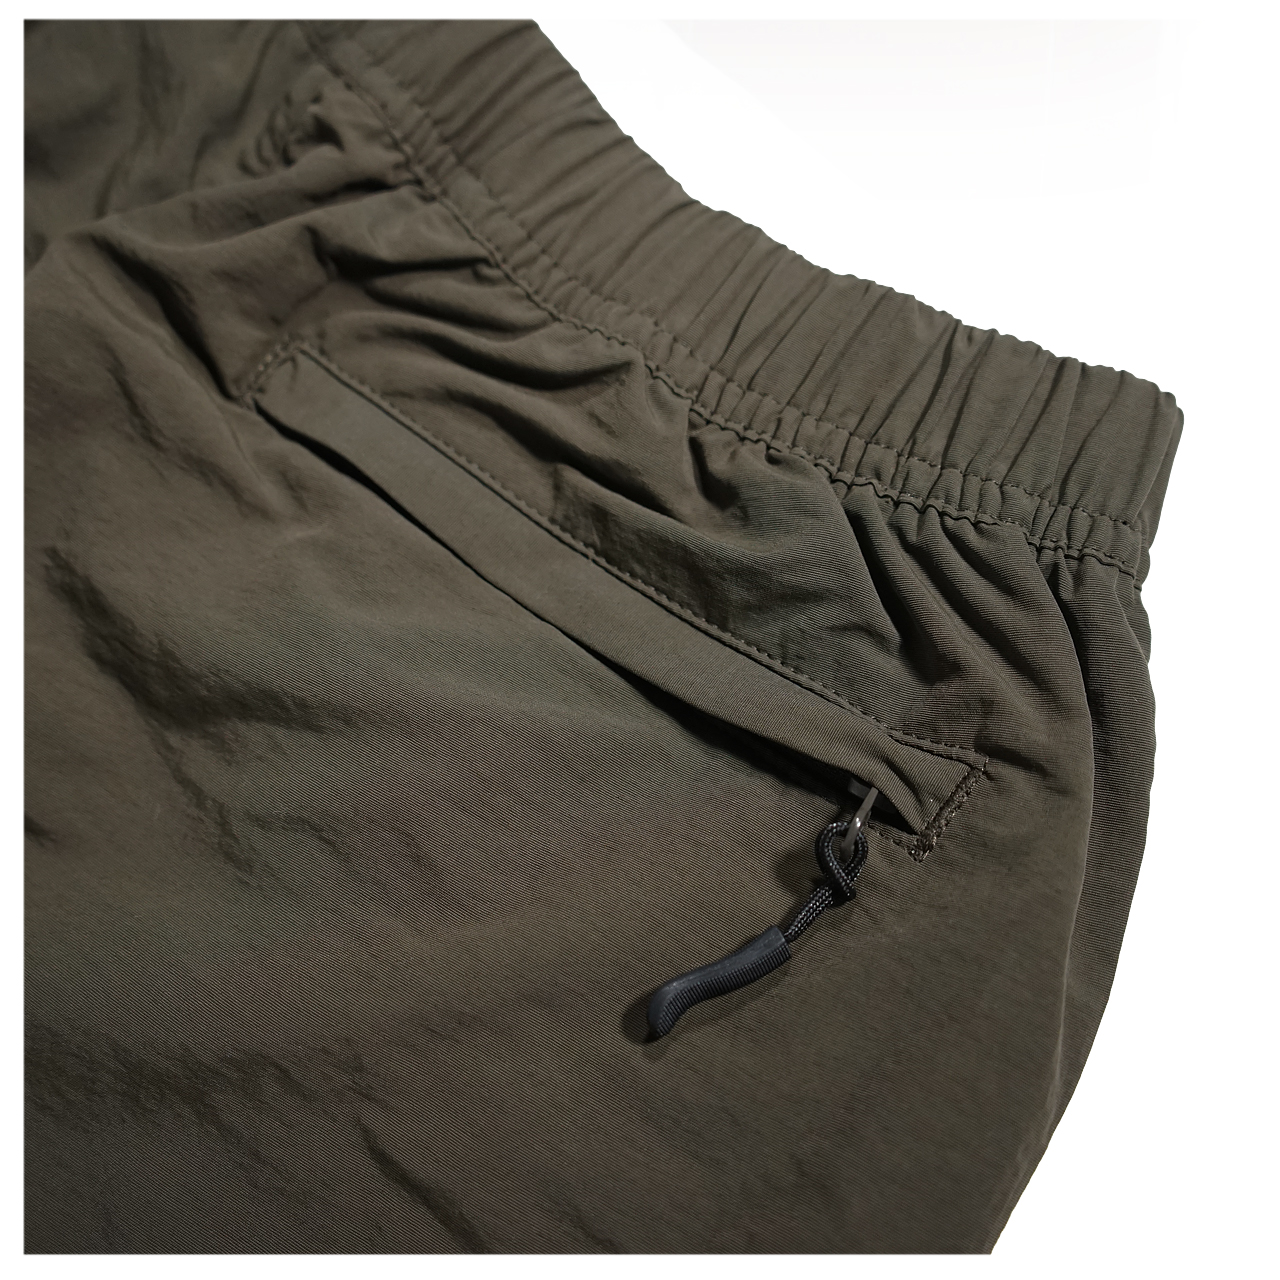 MEWSHIP LOGO nylon active pants 【Khaki×White】